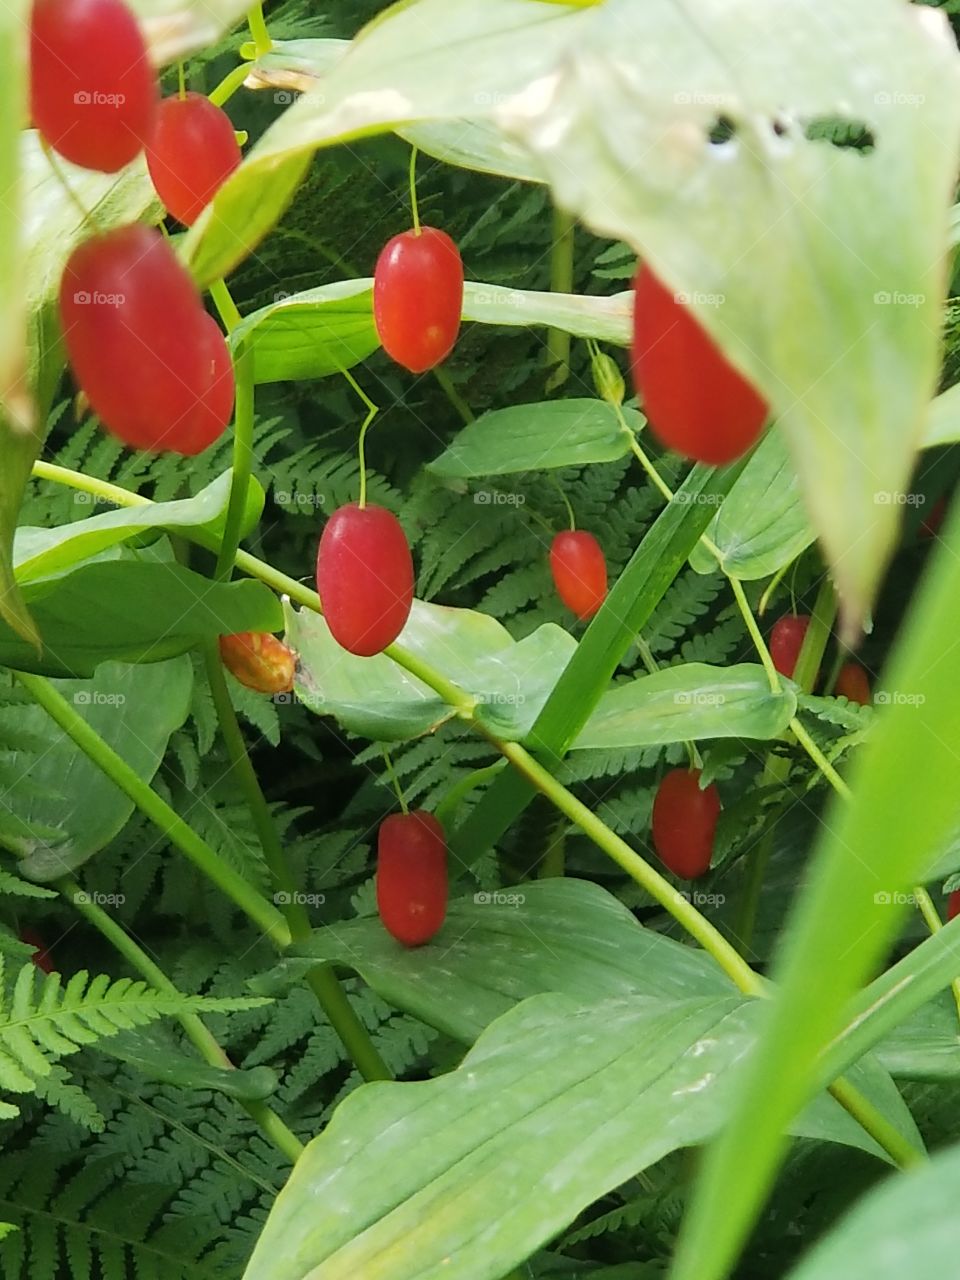 watermellon berries